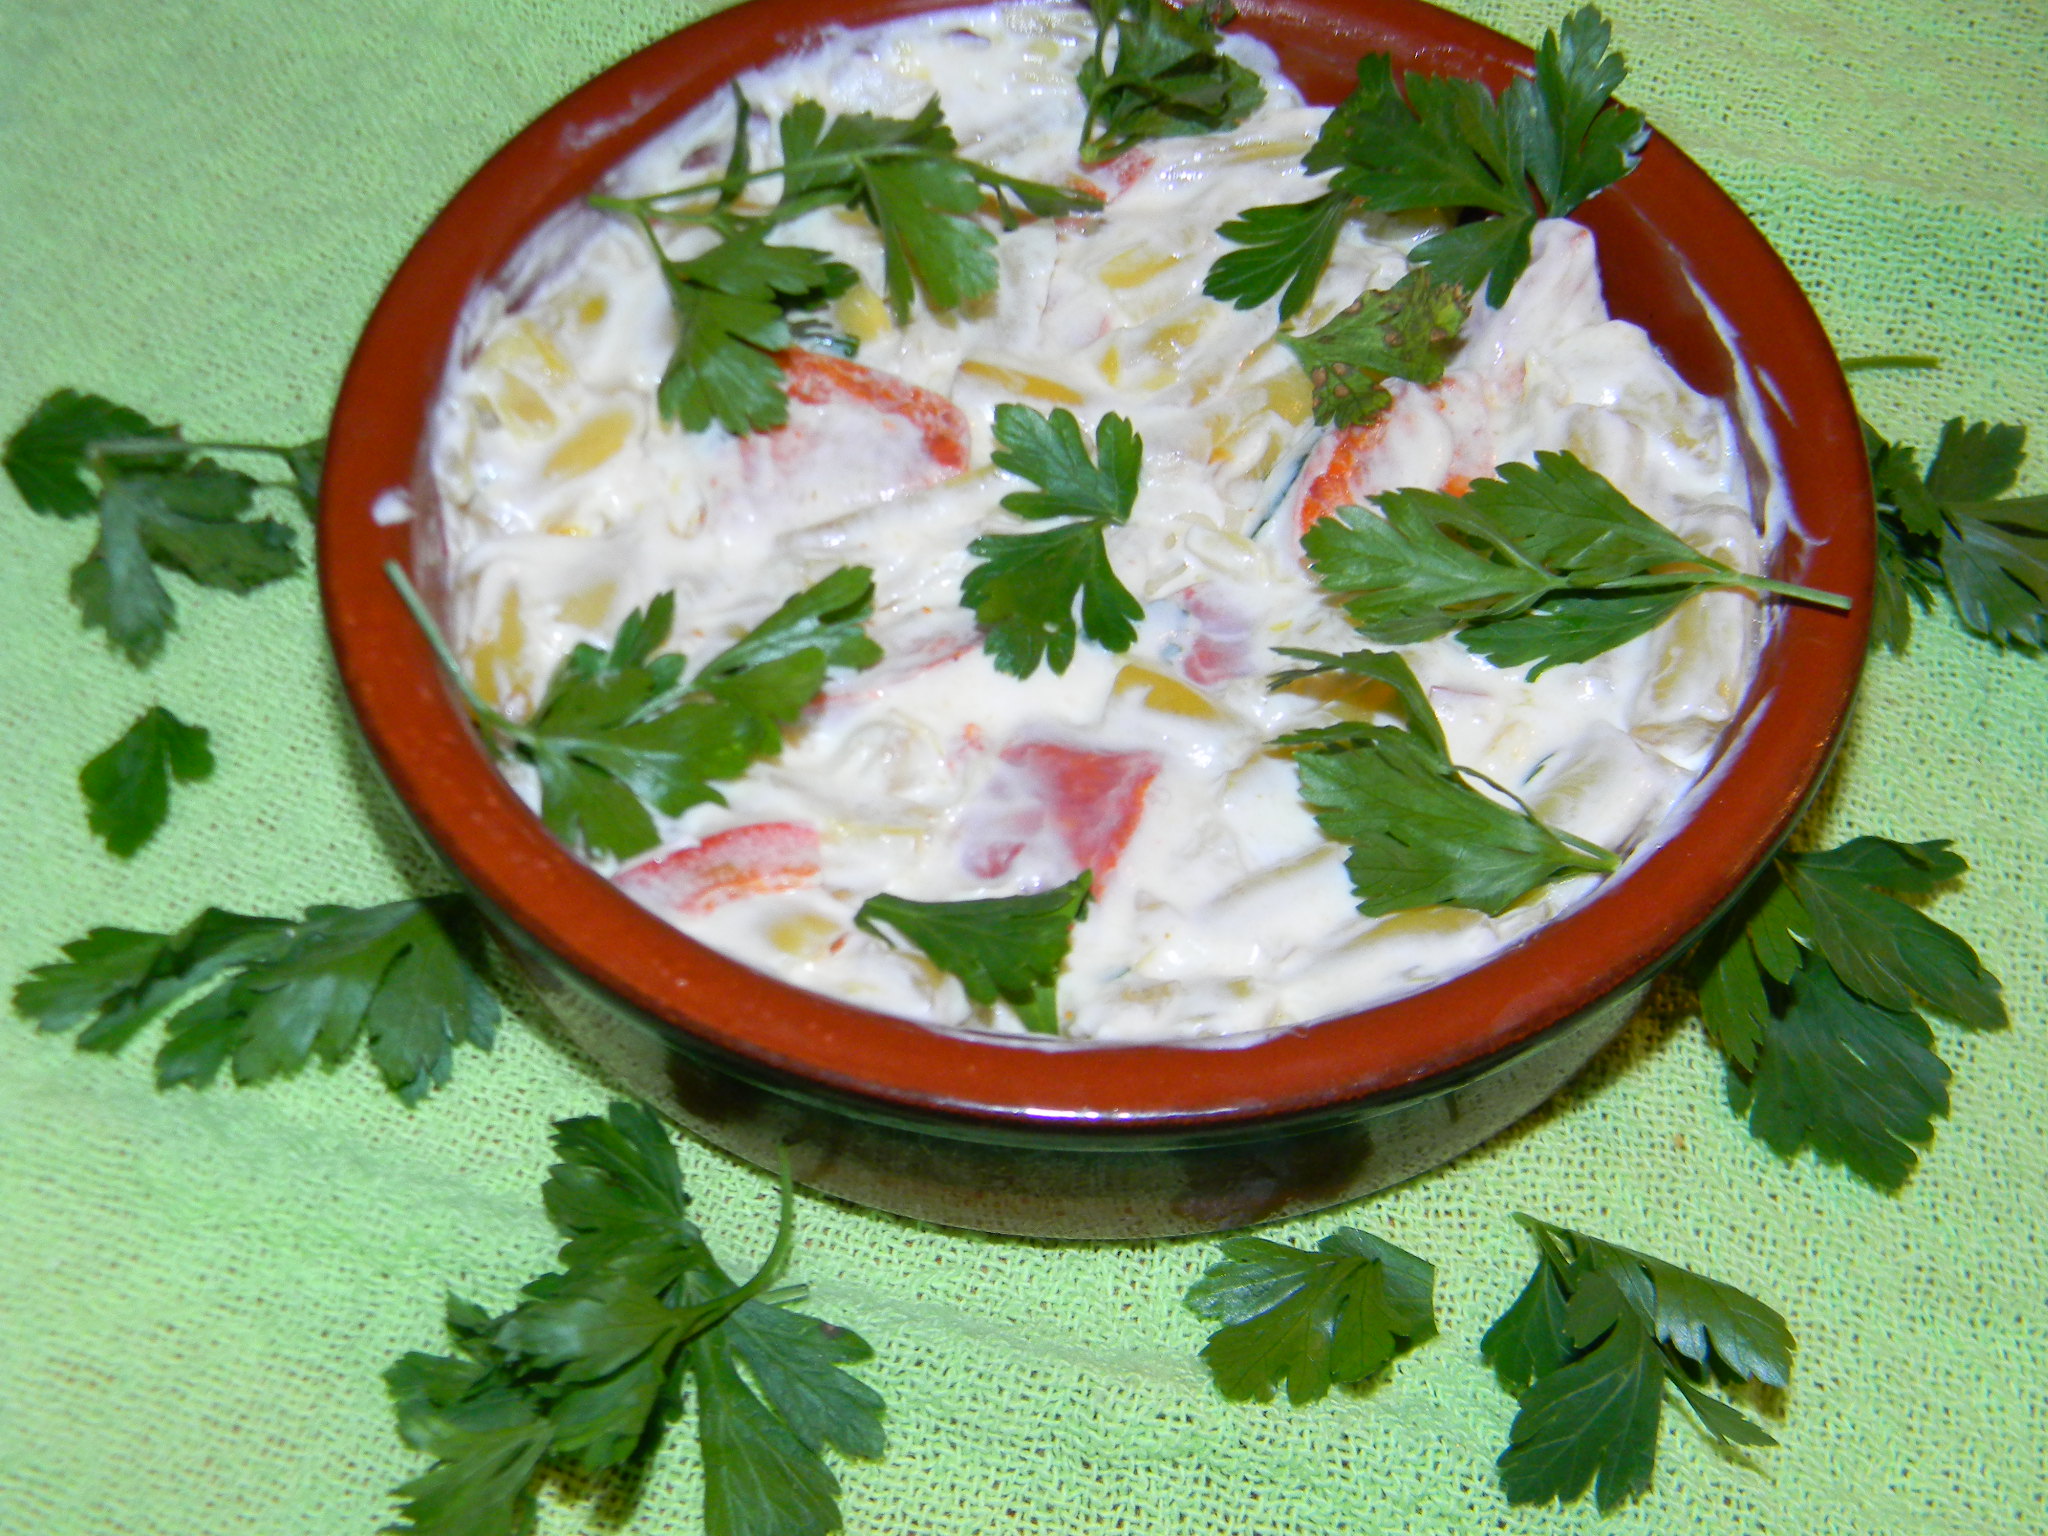 Salata de fasole cu chorizo